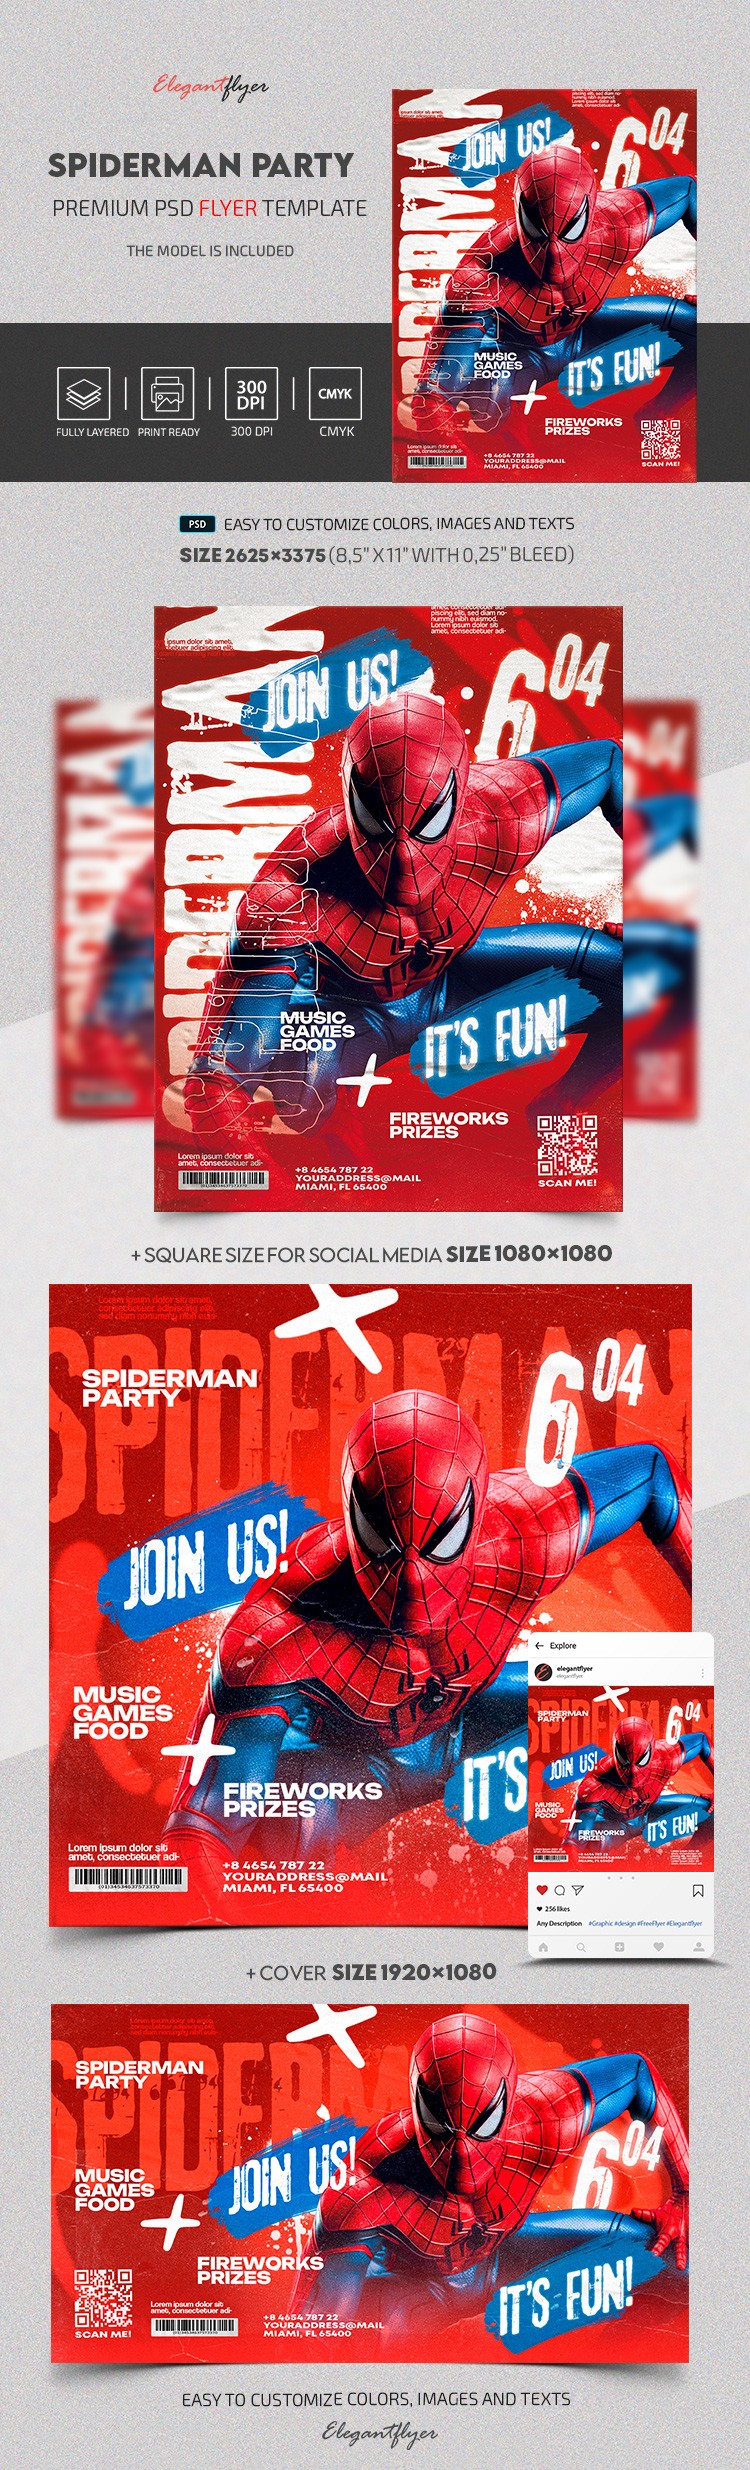 Spiderman Einladung by ElegantFlyer